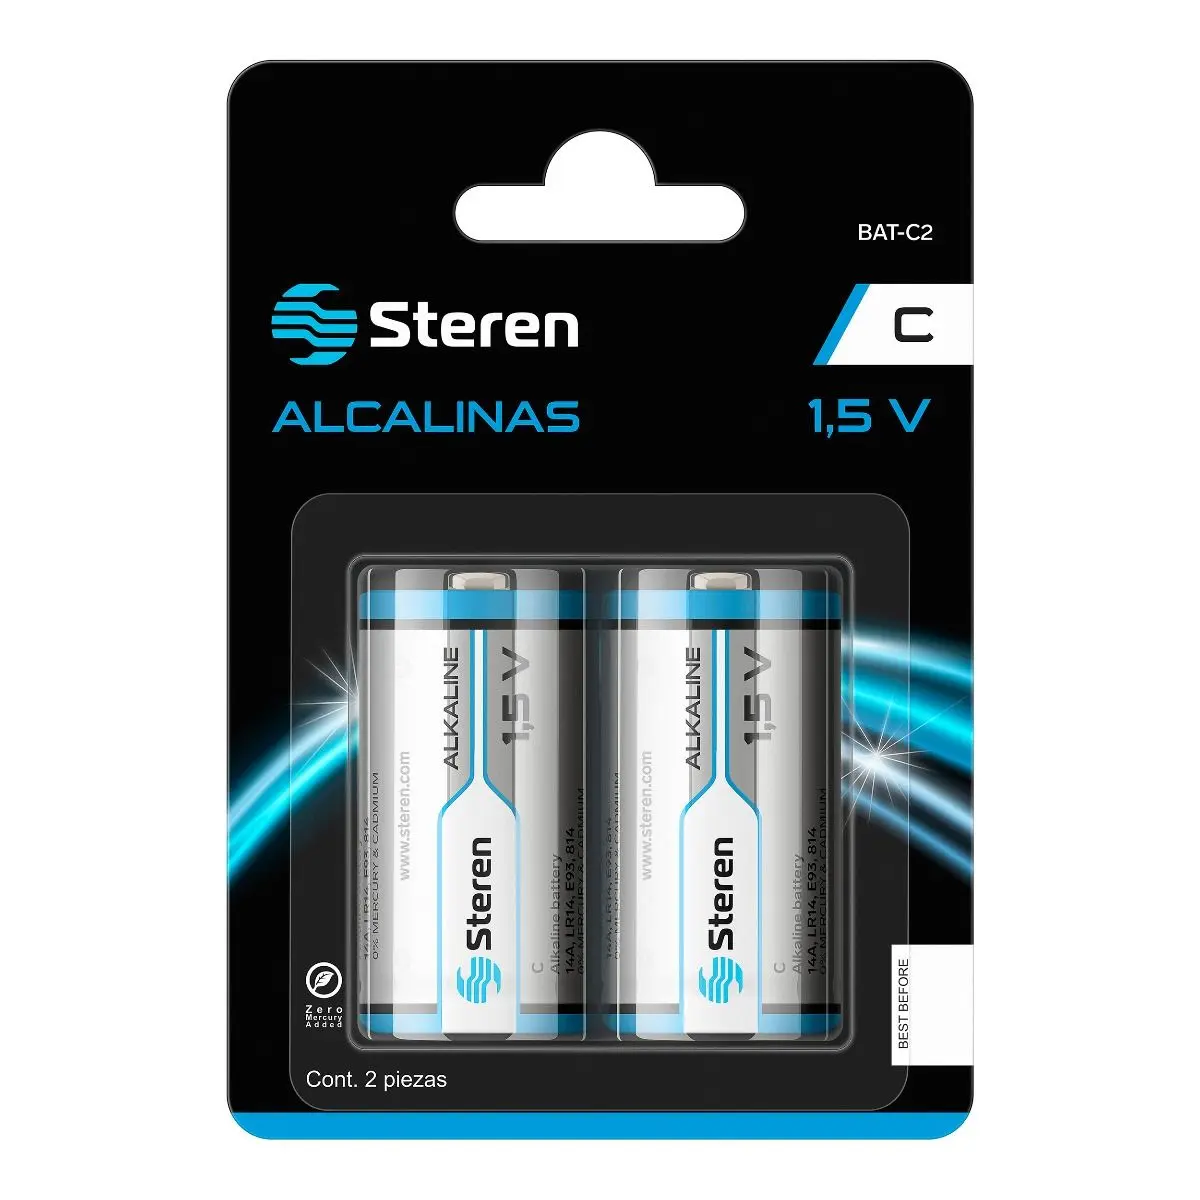 baterias alcalinas tipo c - Qué aparatos usan pilas tipo C